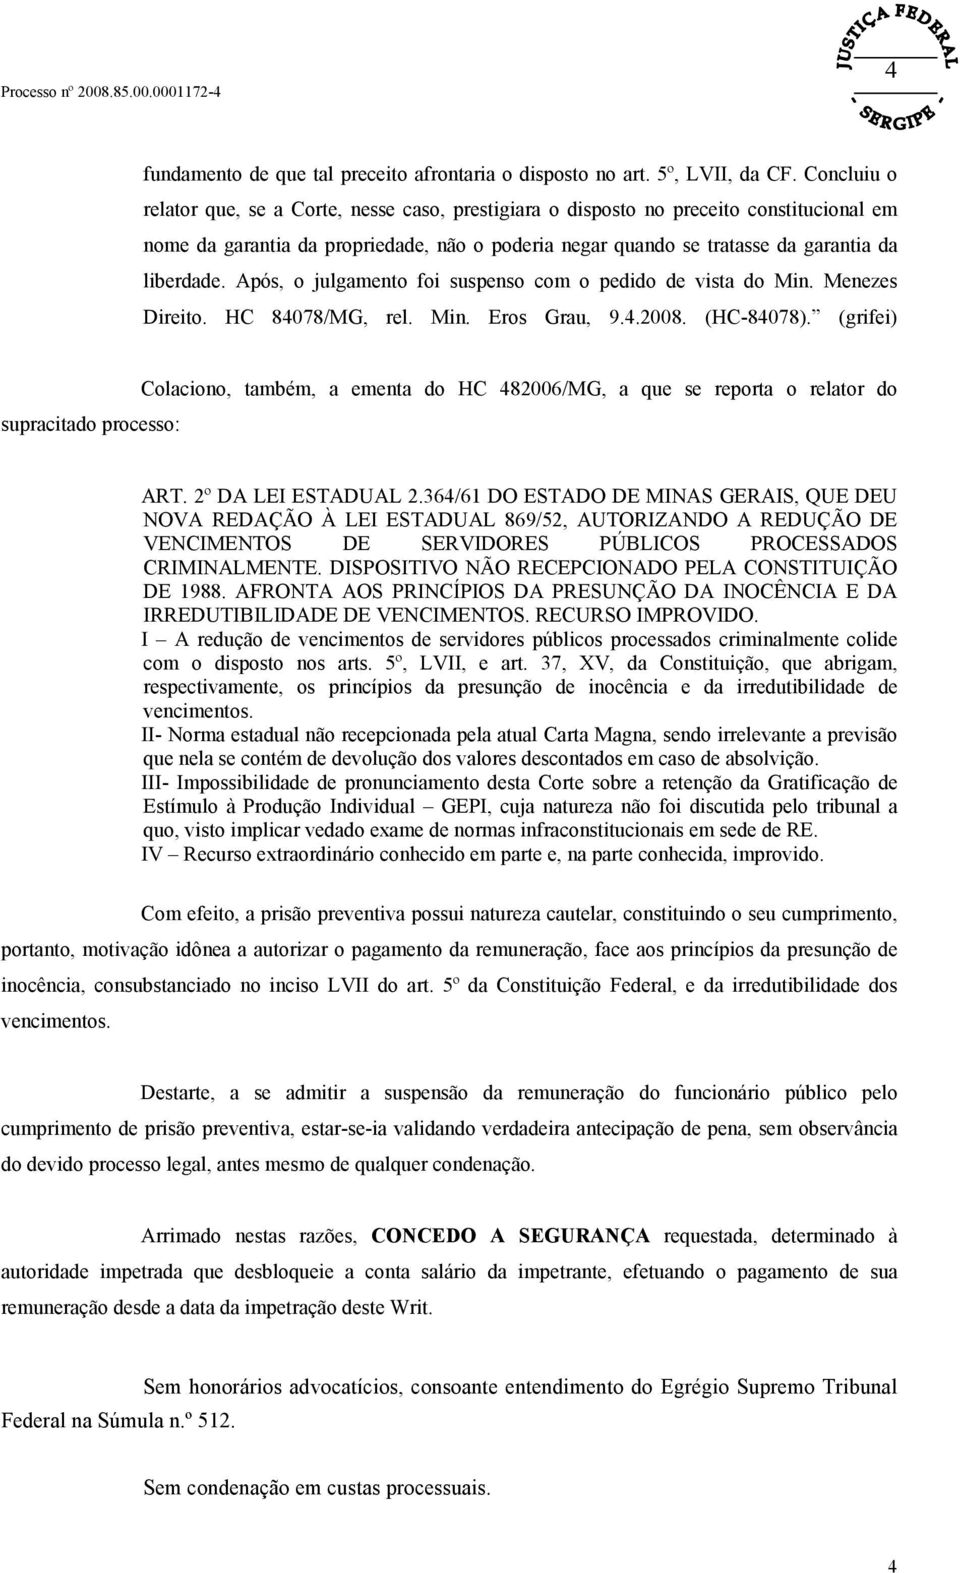 Após, o julgamento foi suspenso com o pedido de vista do Min. Menezes Direito. HC 84078/MG, rel. Min. Eros Grau, 9.4.2008. (HC-84078).